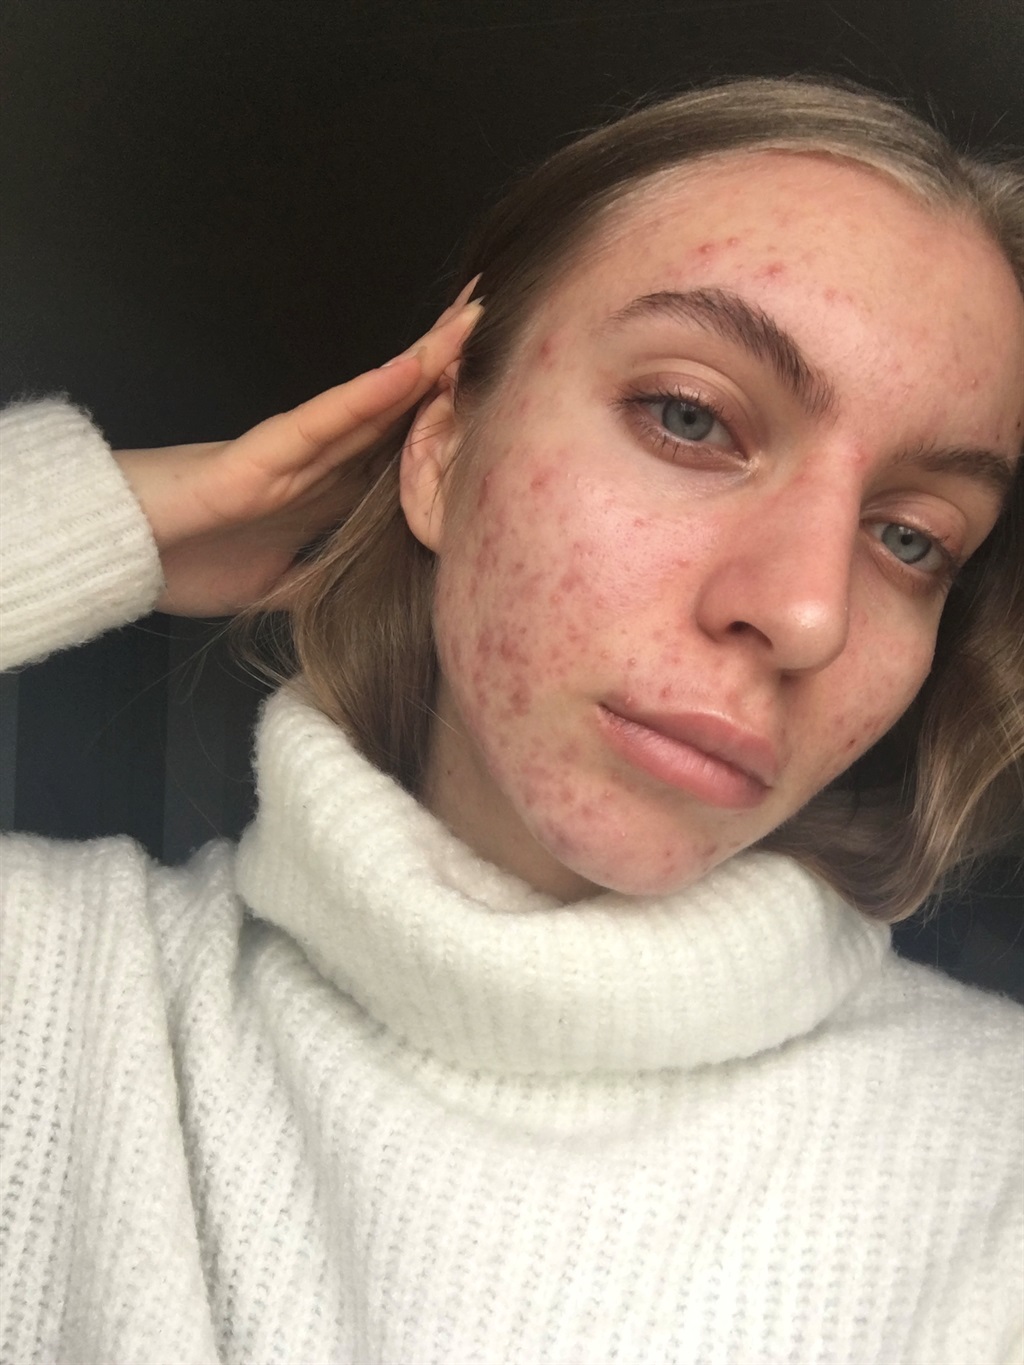 acne, dating, skin